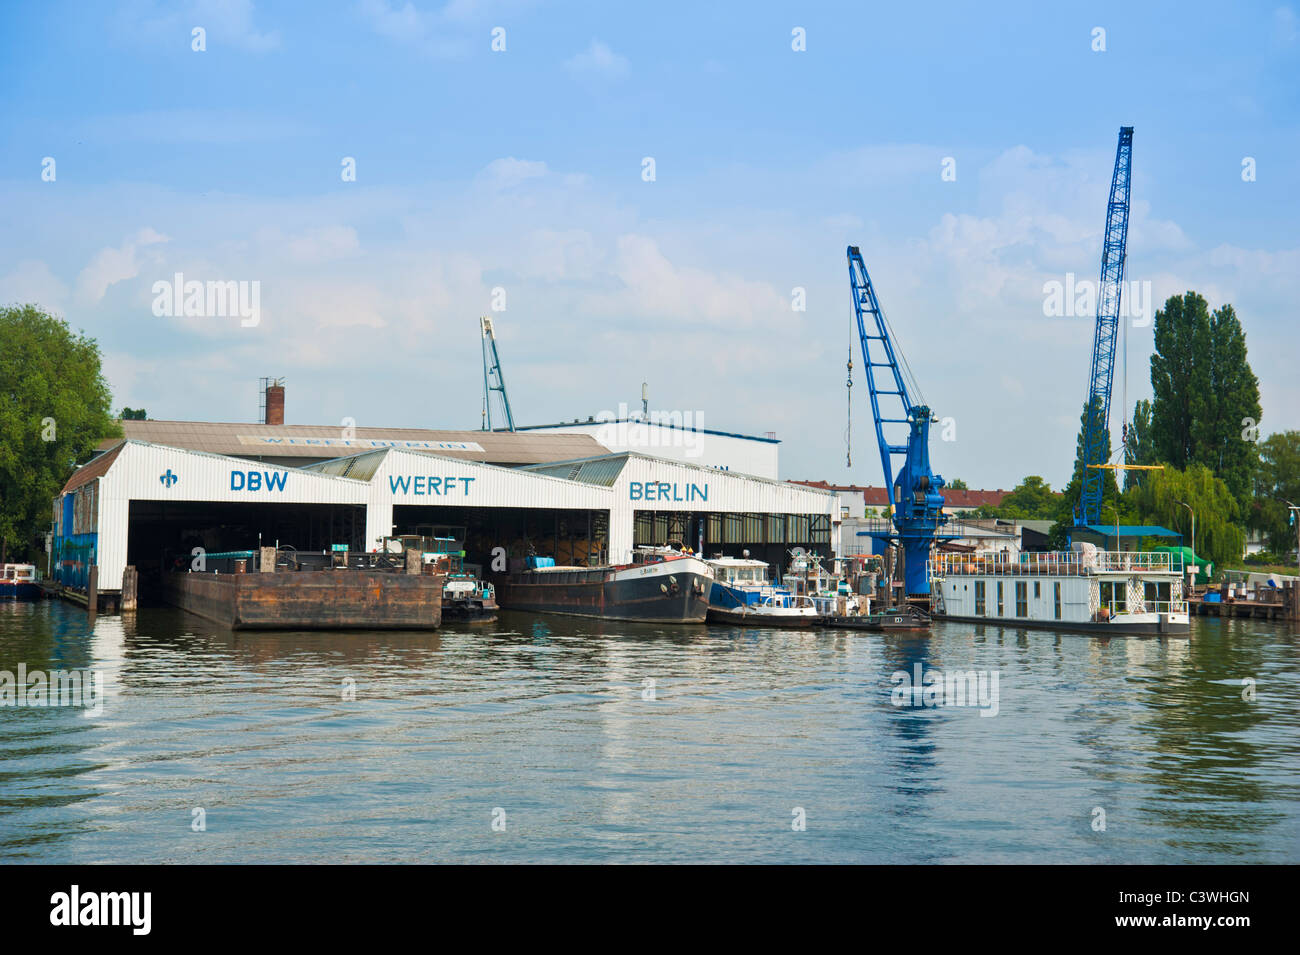 DBW-Werft Shipbuilding Company sur la rivière Dahme, Berlin, Allemagne Banque D'Images